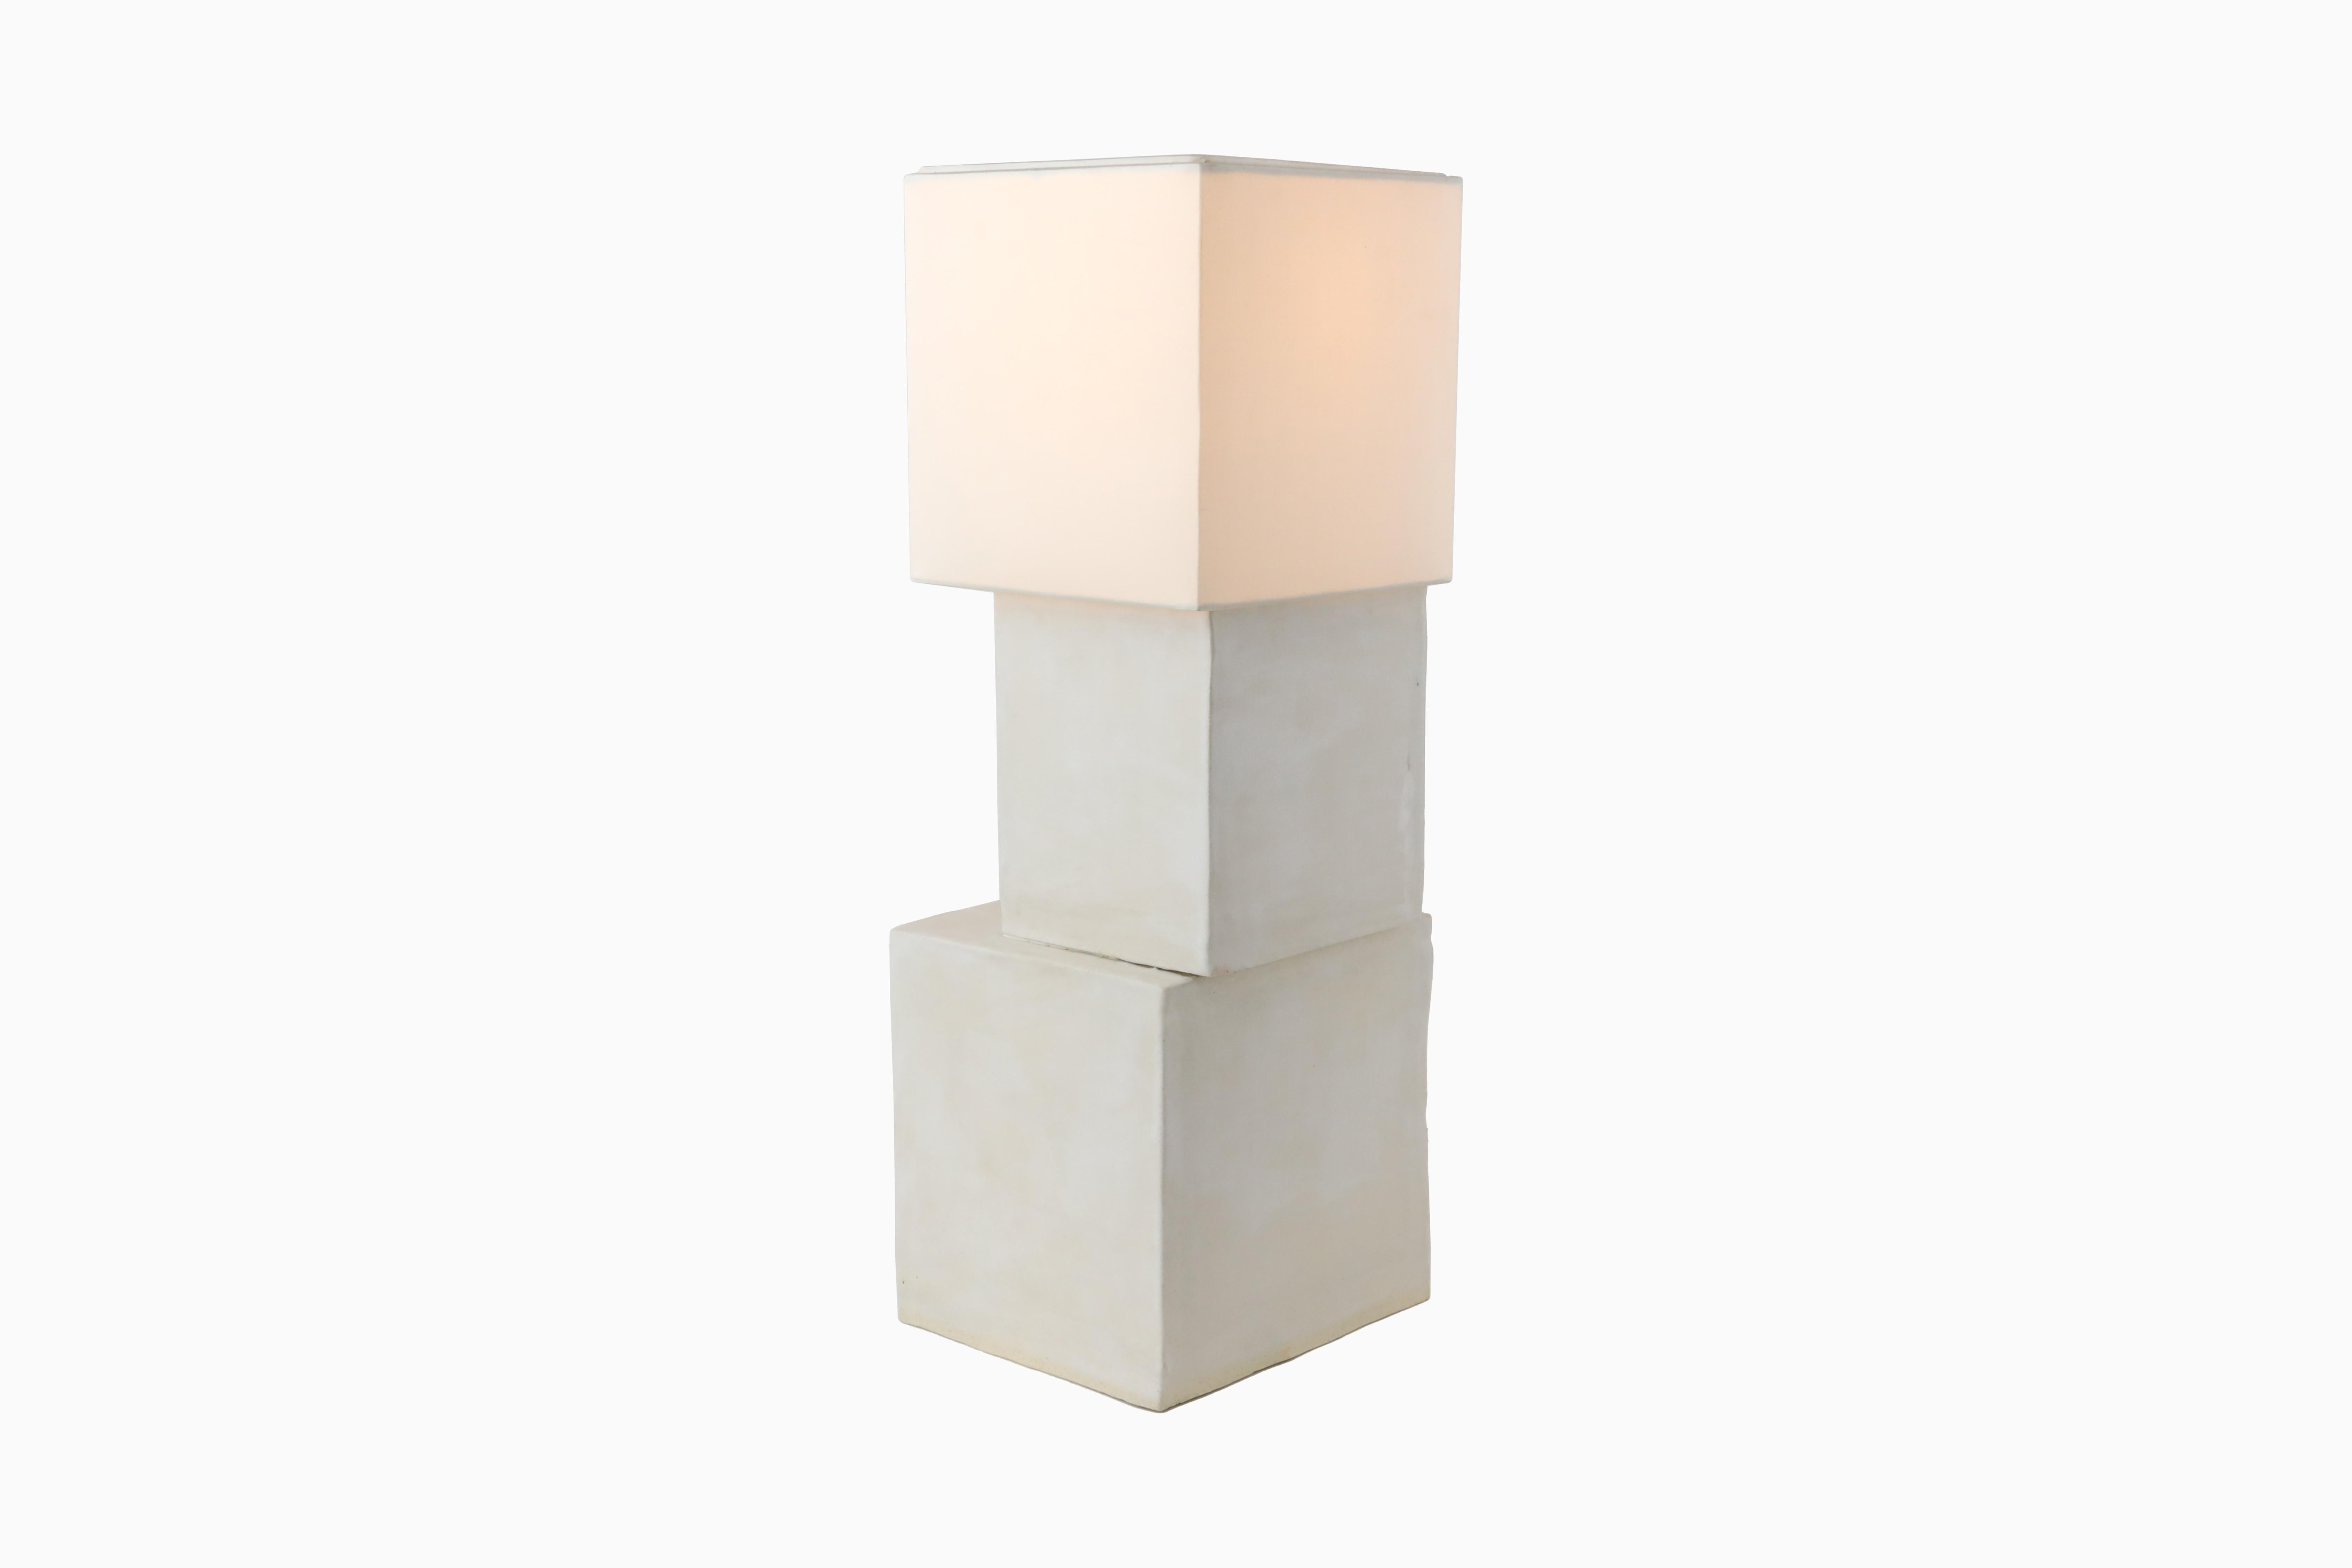 La lampe Stacked Cube a été inspirée par l'architecture moderne de la ville de New York. Chaque cube est fabriqué en argile blanche et recouvert d'une glaçure blanche mate. Les cubes sont assemblés de manière décentrée mais trouvent un équilibre